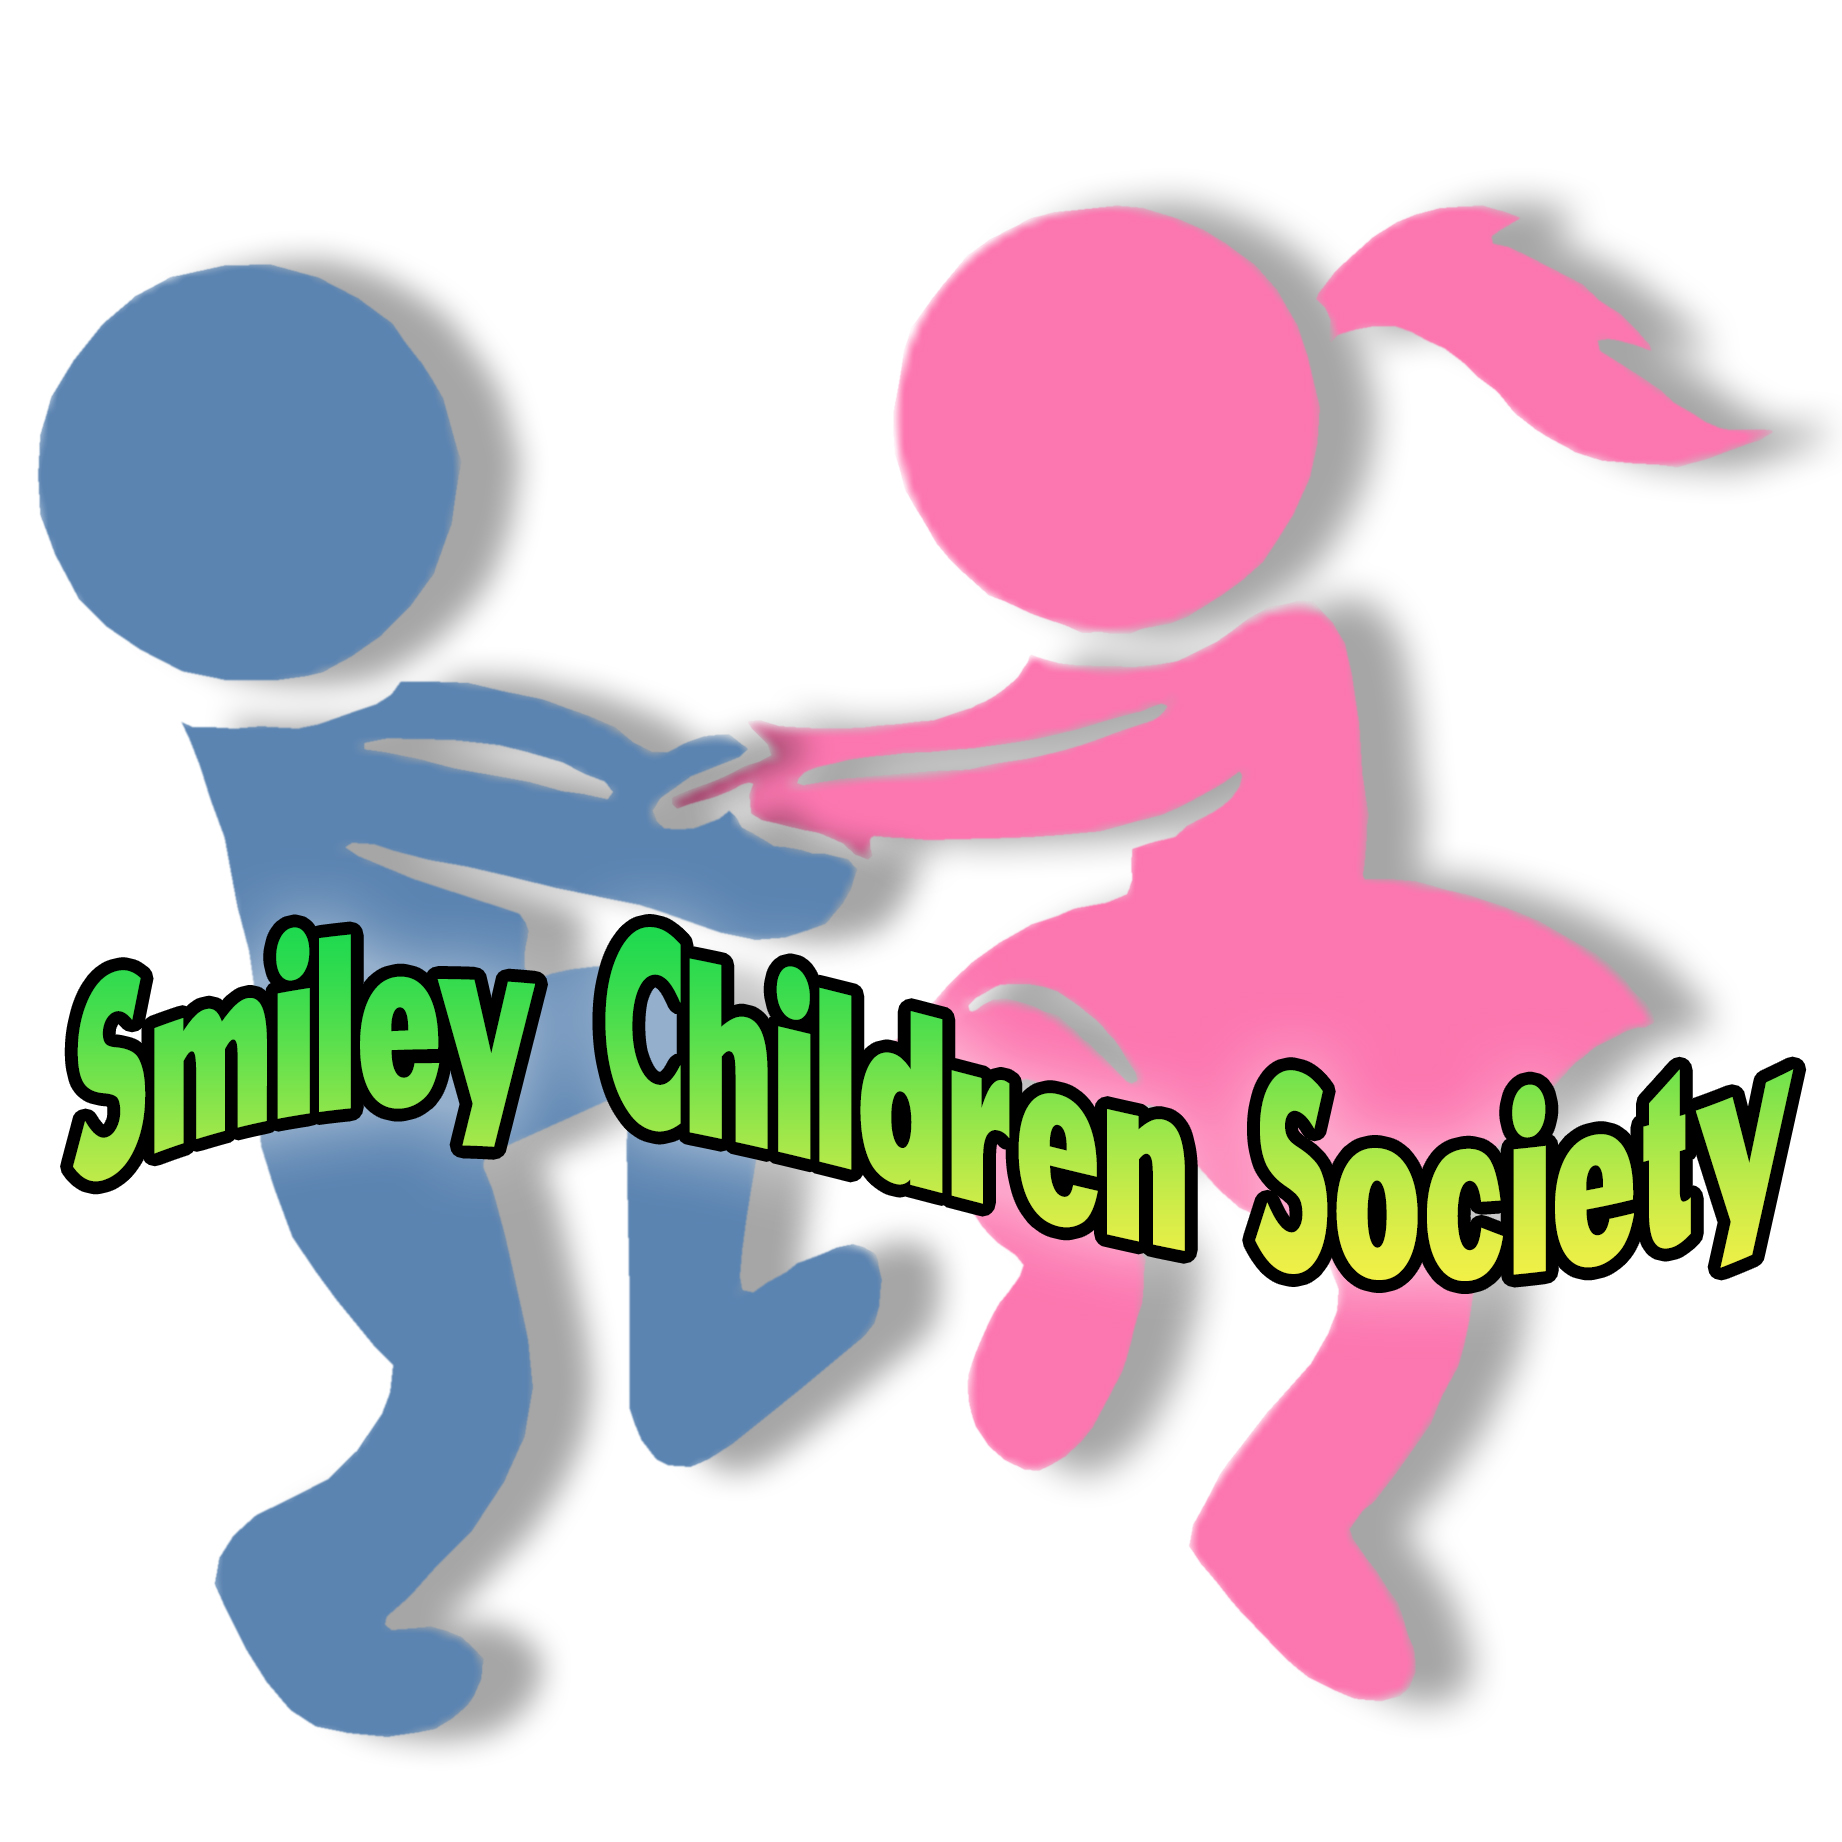 SMILEY CHILDREN SOCIETY